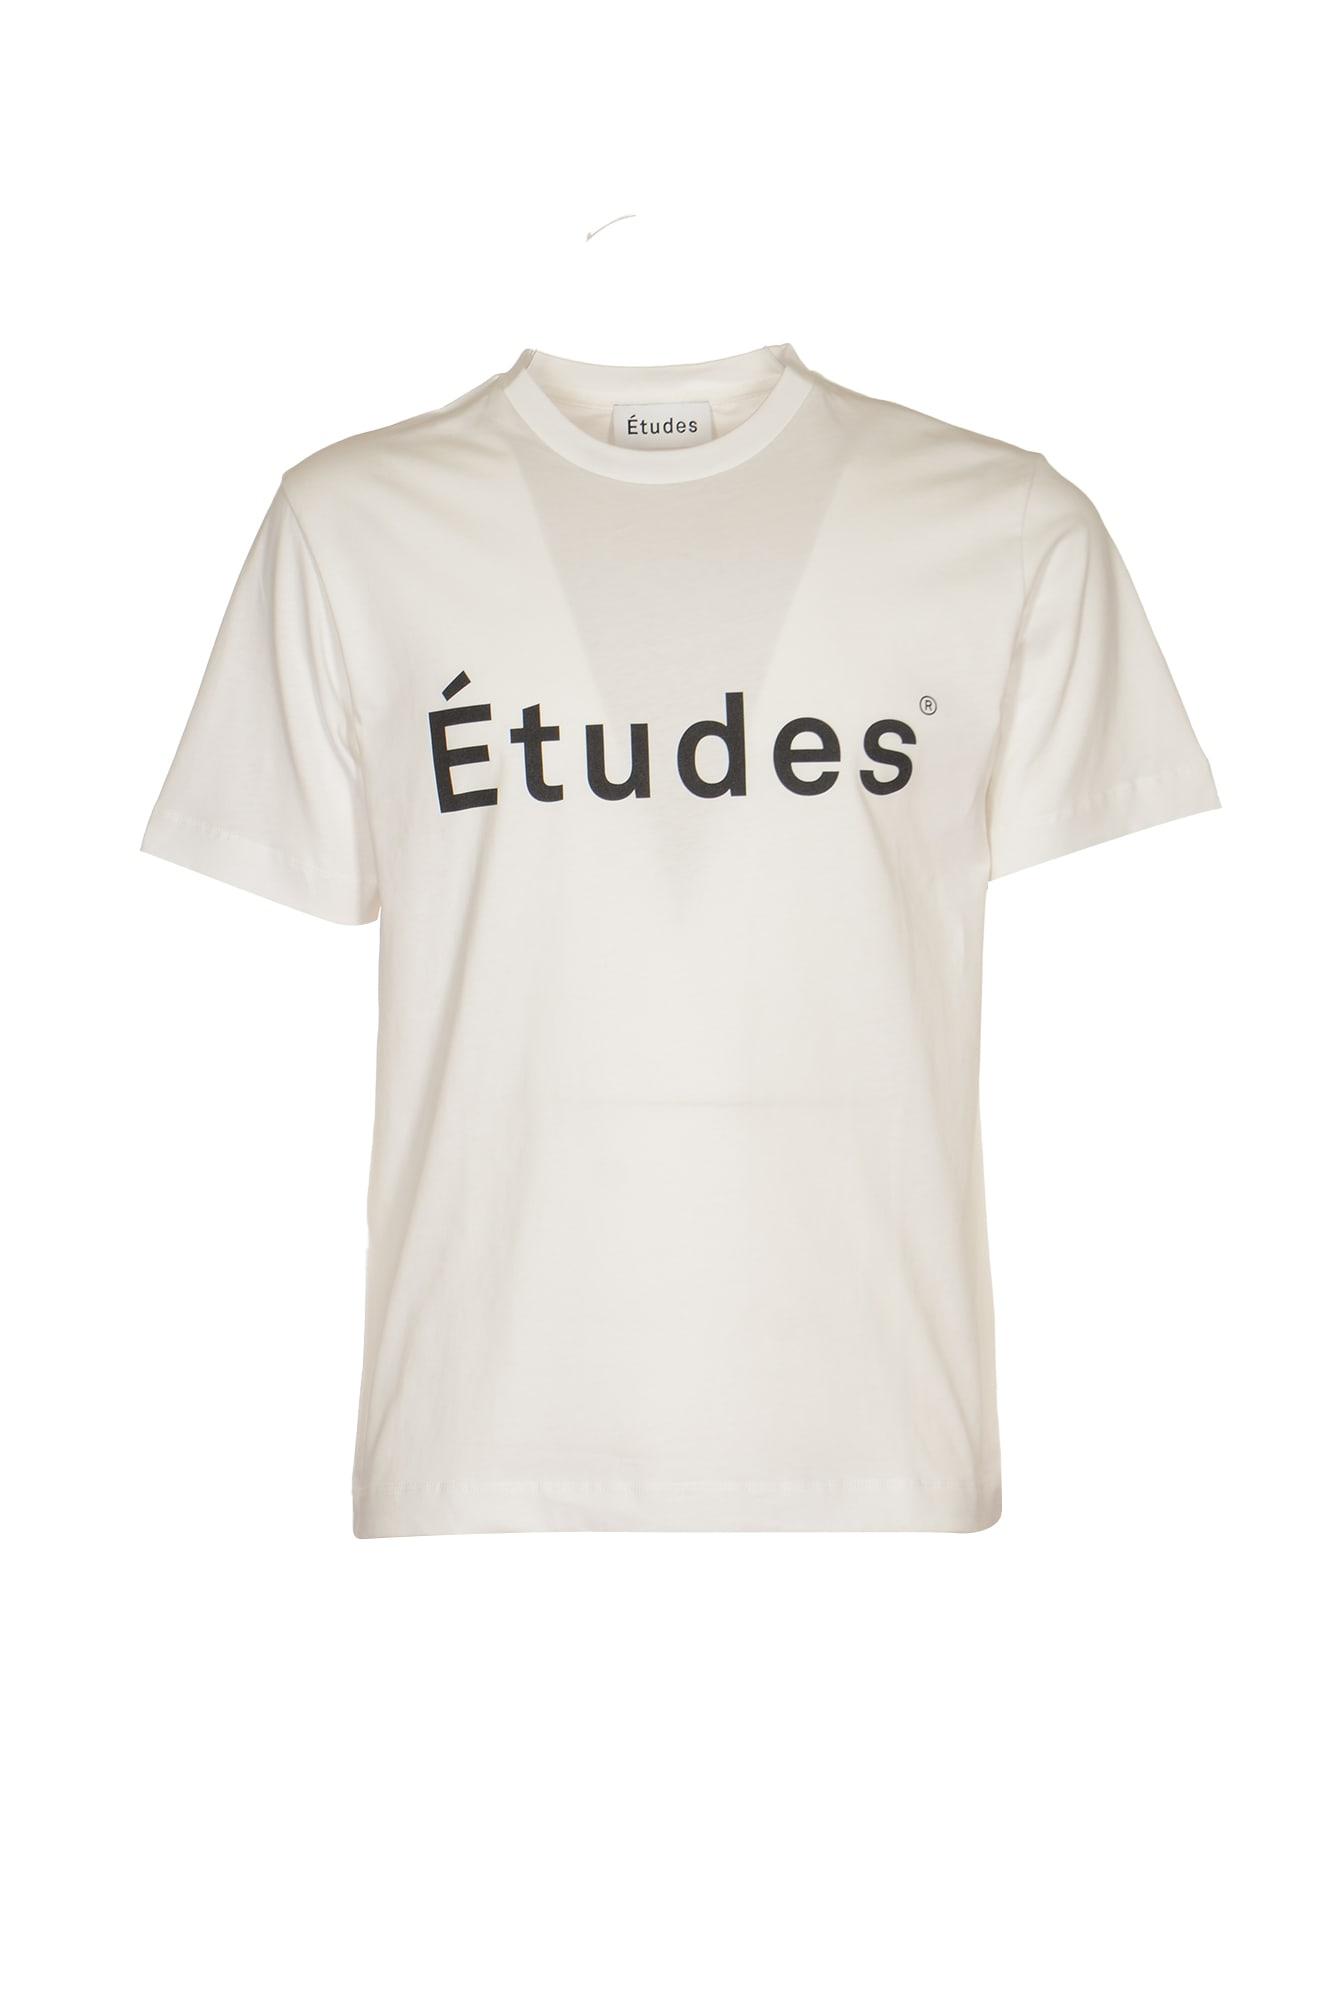 Etudes Studio Wonder Etudes T-shirt in White for Men | Lyst